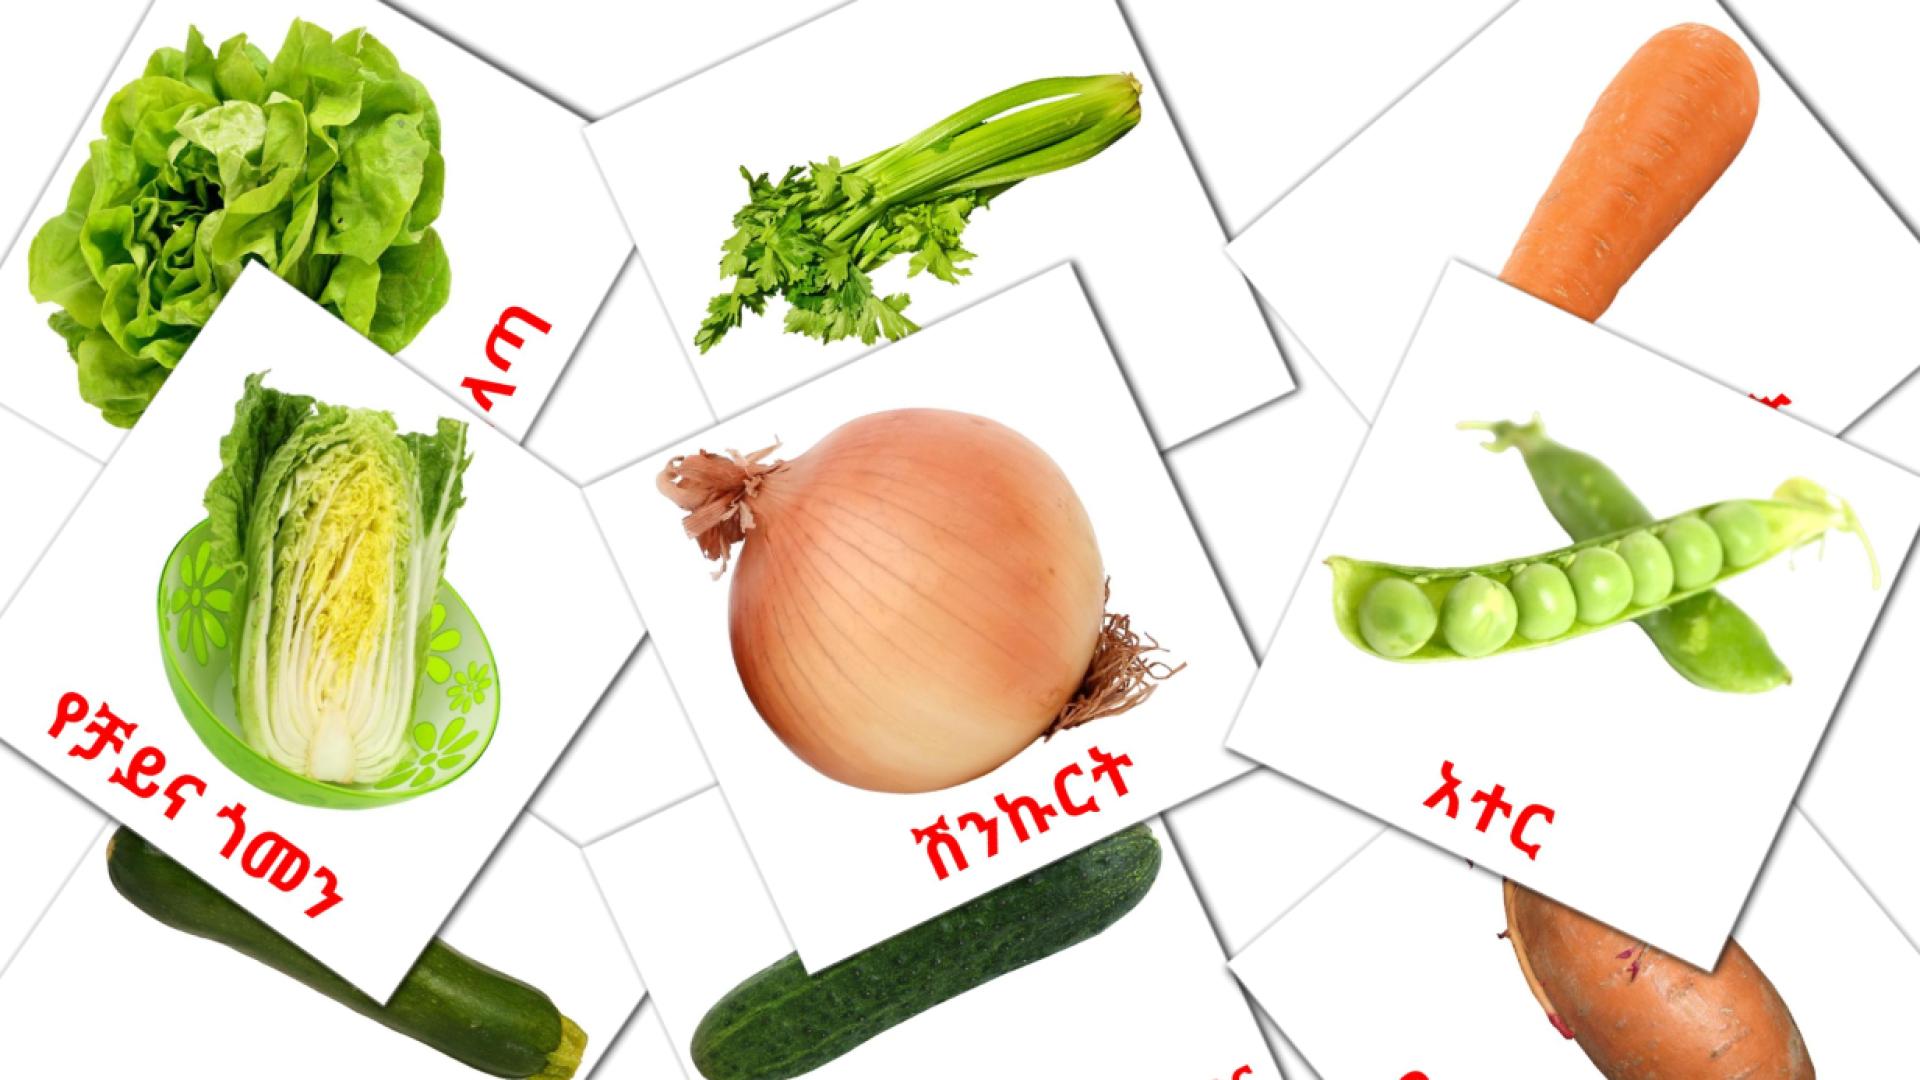 Gemüse - Amharische Vokabelkarten